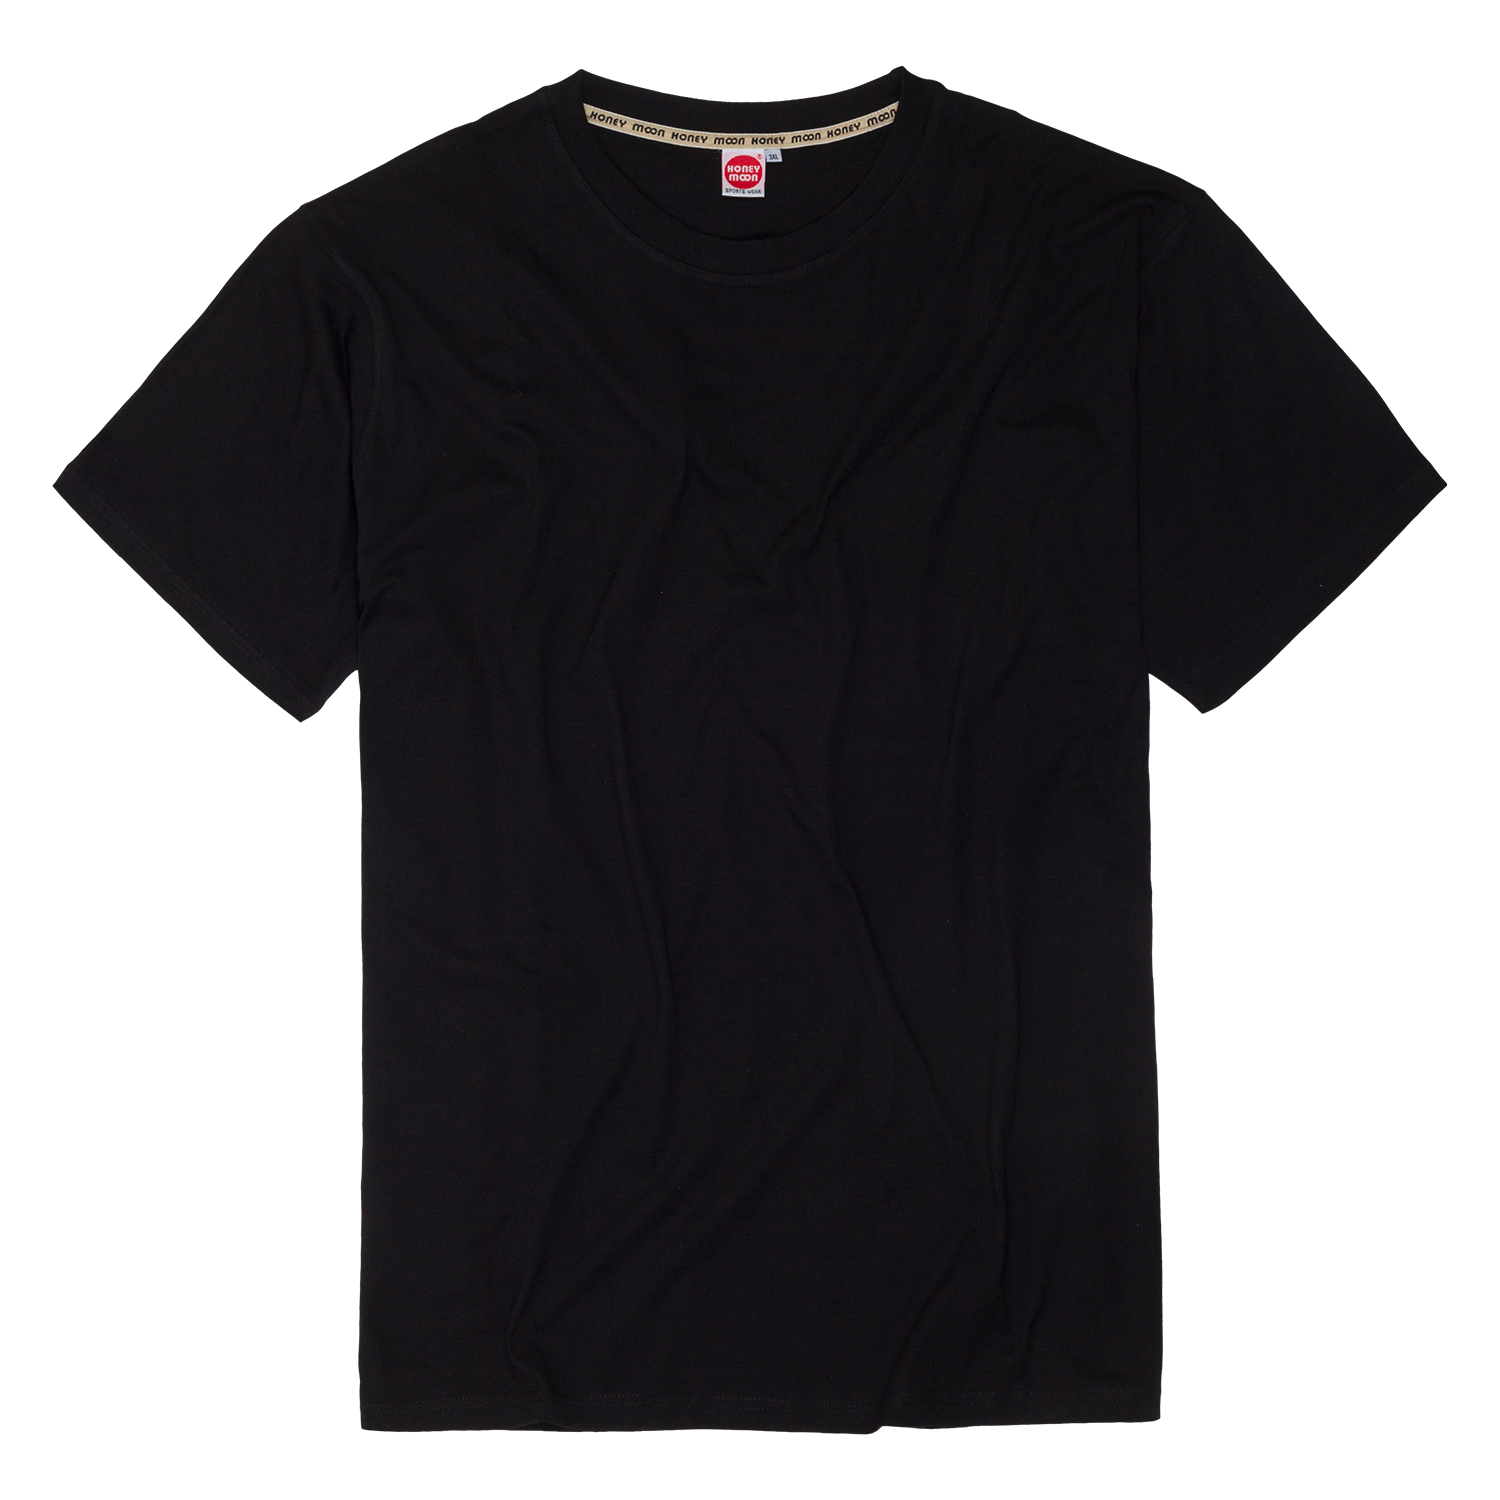 T-shirt en noir by Honeymoon en grandes tailles jusqu'au 15XL